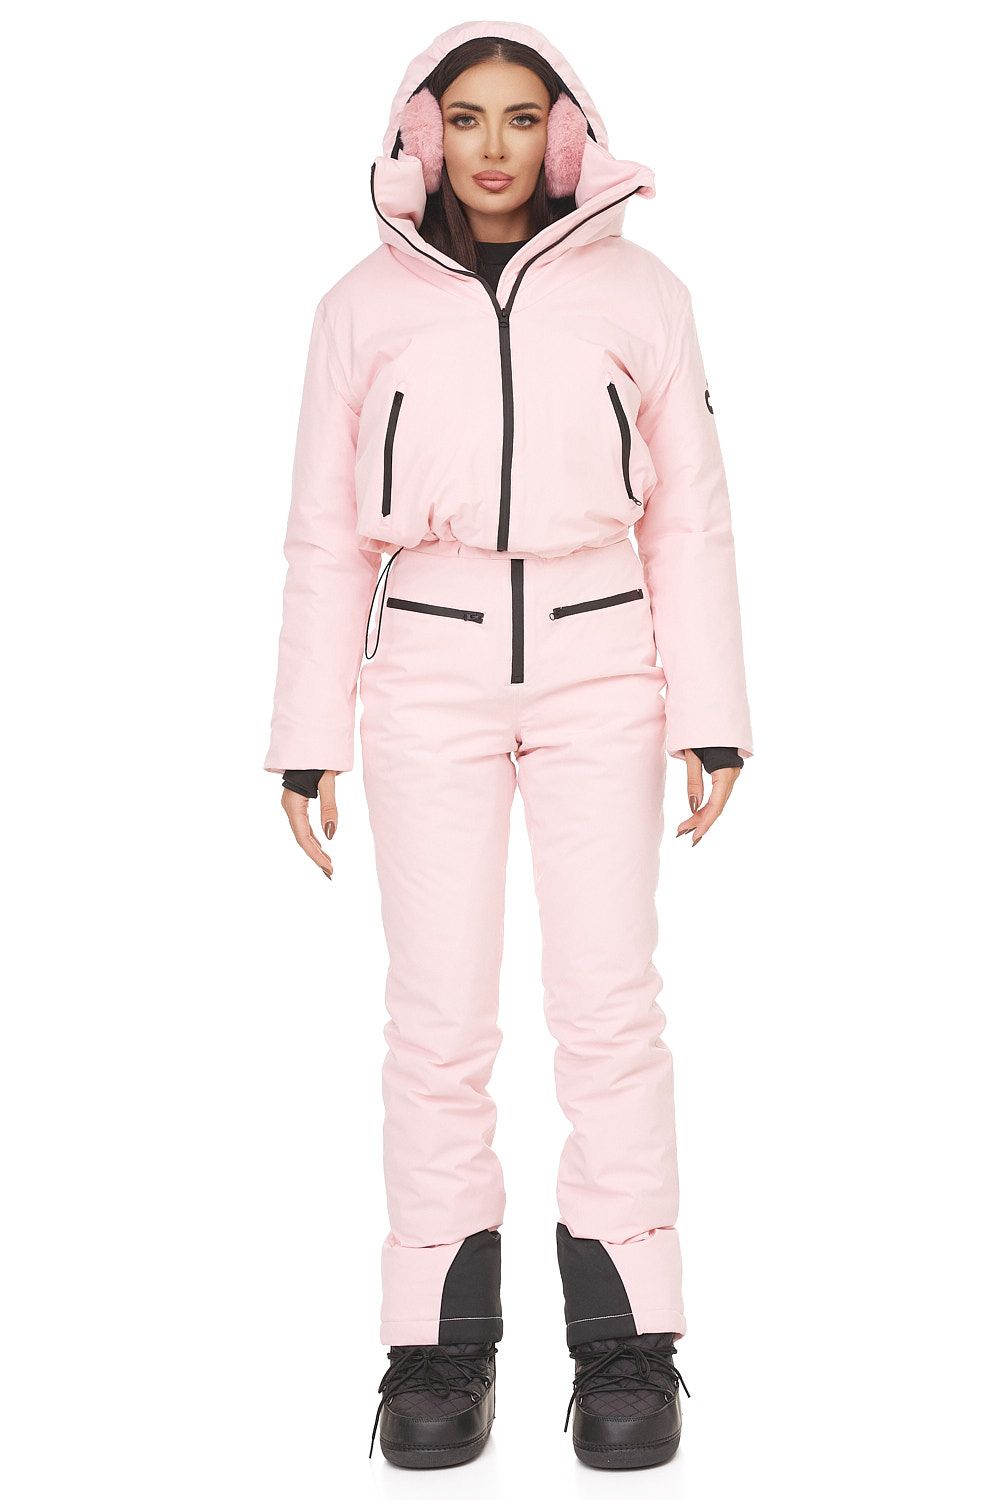 Costum ski casual roz Reasia Bogas